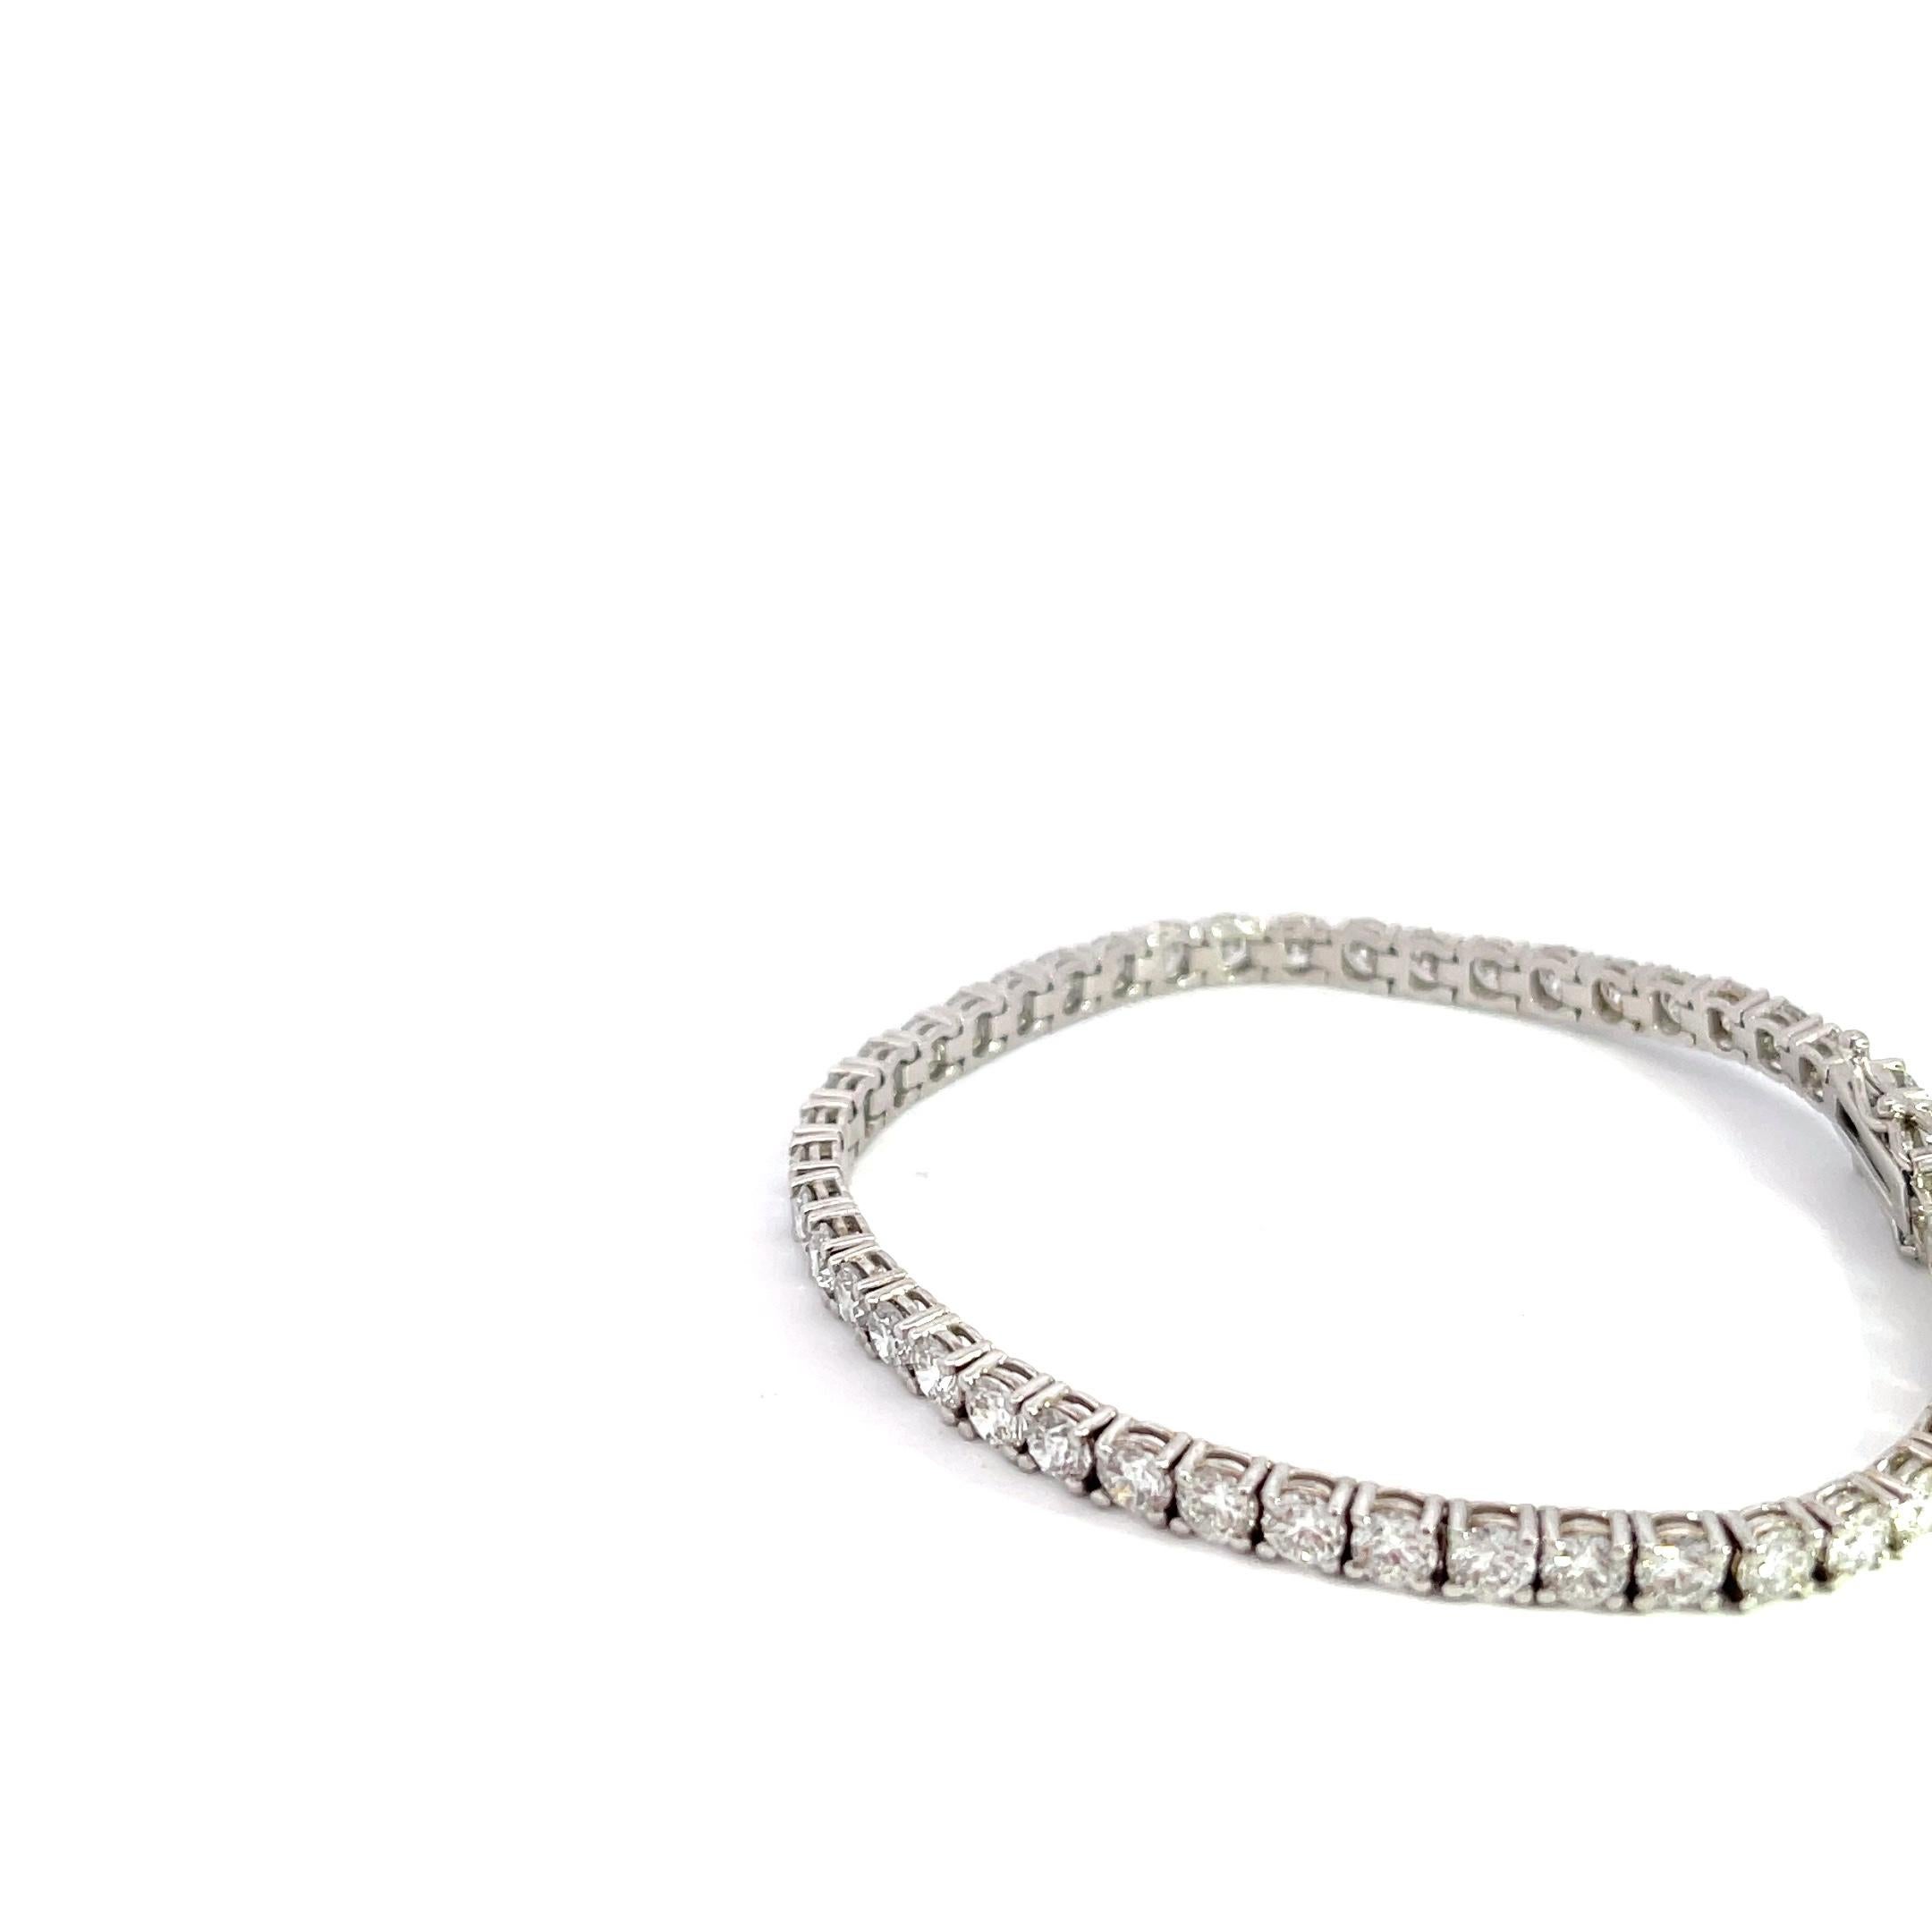 Das exquisite 14k White Gold 8 1/3ctw Diamond Tennis Bracelet ist ein wahres Symbol für zeitlose Eleganz und Raffinesse. Dieses schillernde Meisterwerk ist ein Muss für alle, die einen atemberaubenden Auftritt hinlegen wollen. Das mit viel Liebe zum